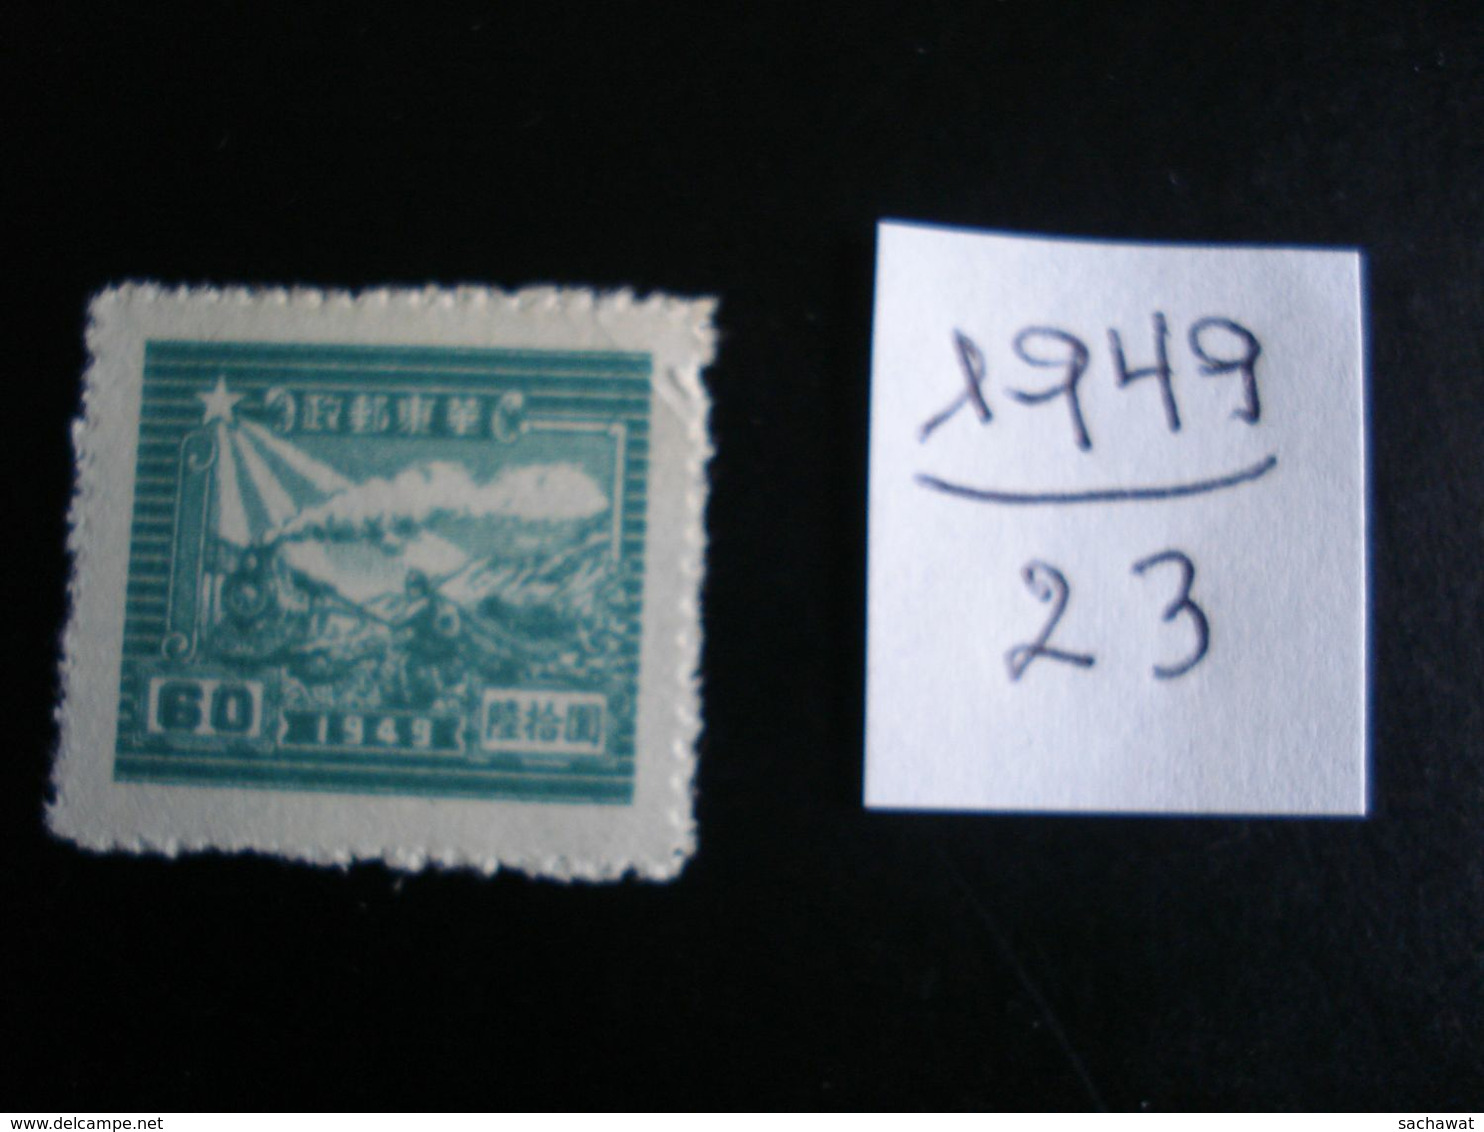 Chine Orientale (Rép. Populaire) -  Année 1949 - Train Et Postier - Y.T. 23 - Oblitérés - Used - China Oriental 1949-50